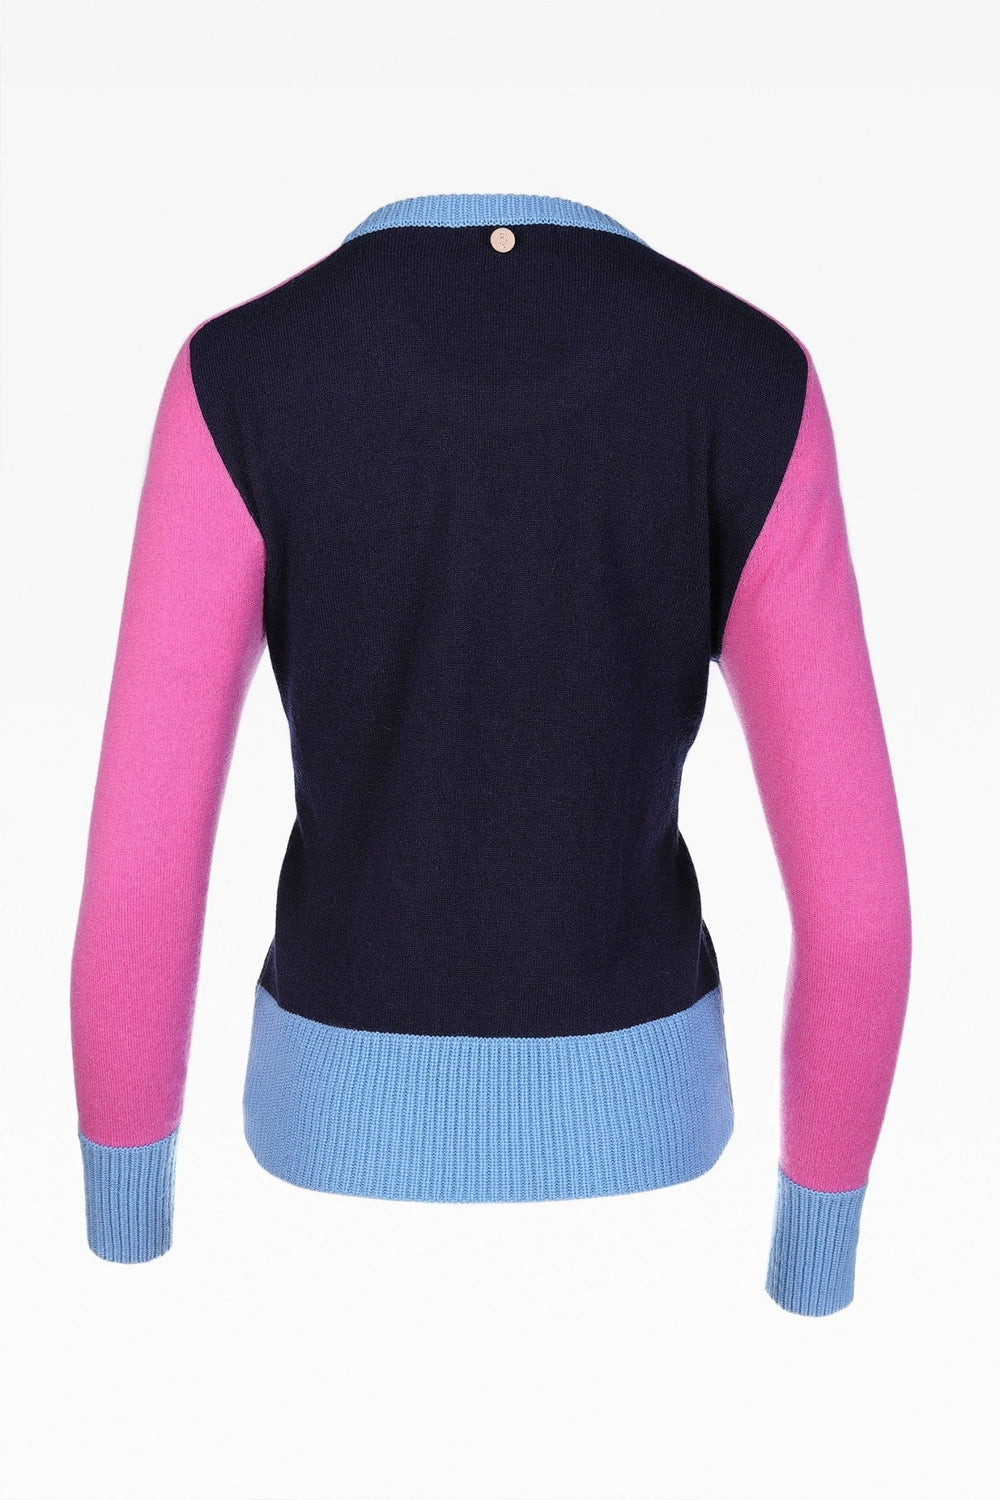 Alex Colour Block Sweater - Dunedin Cashmere